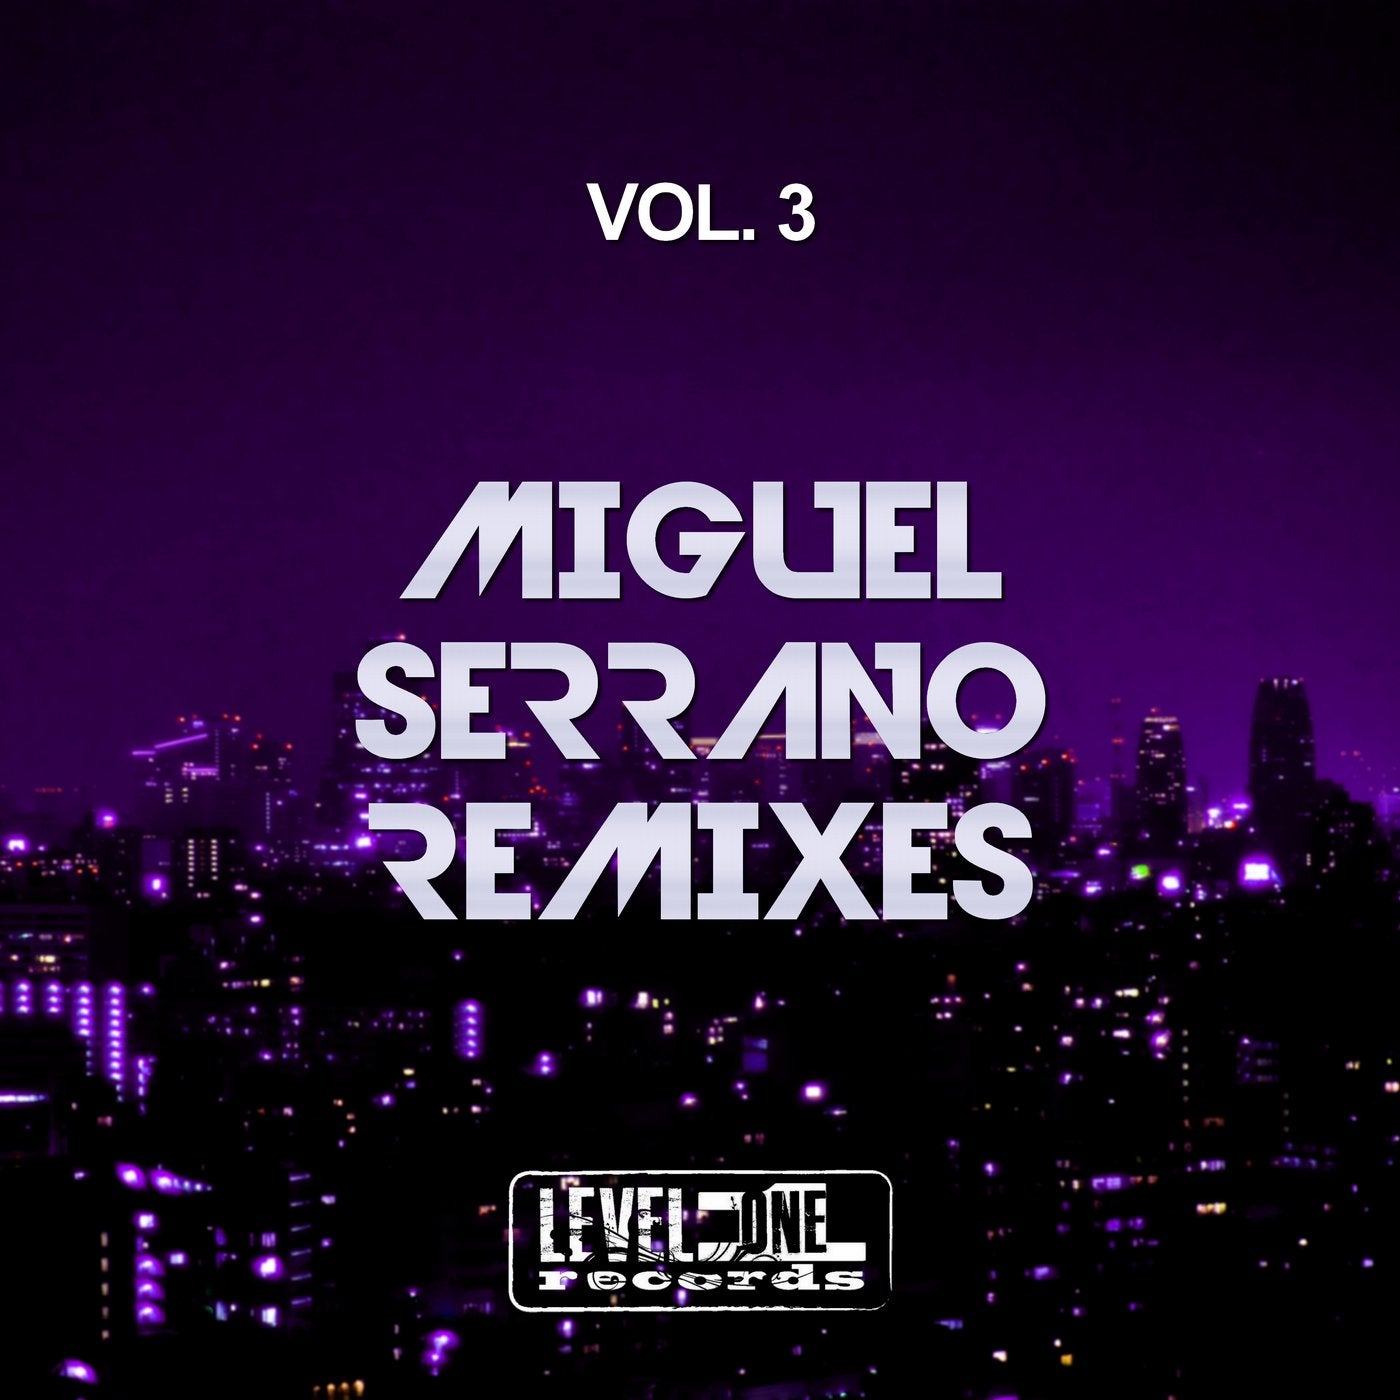 Miguel Serrano Remixes, Vol. 3